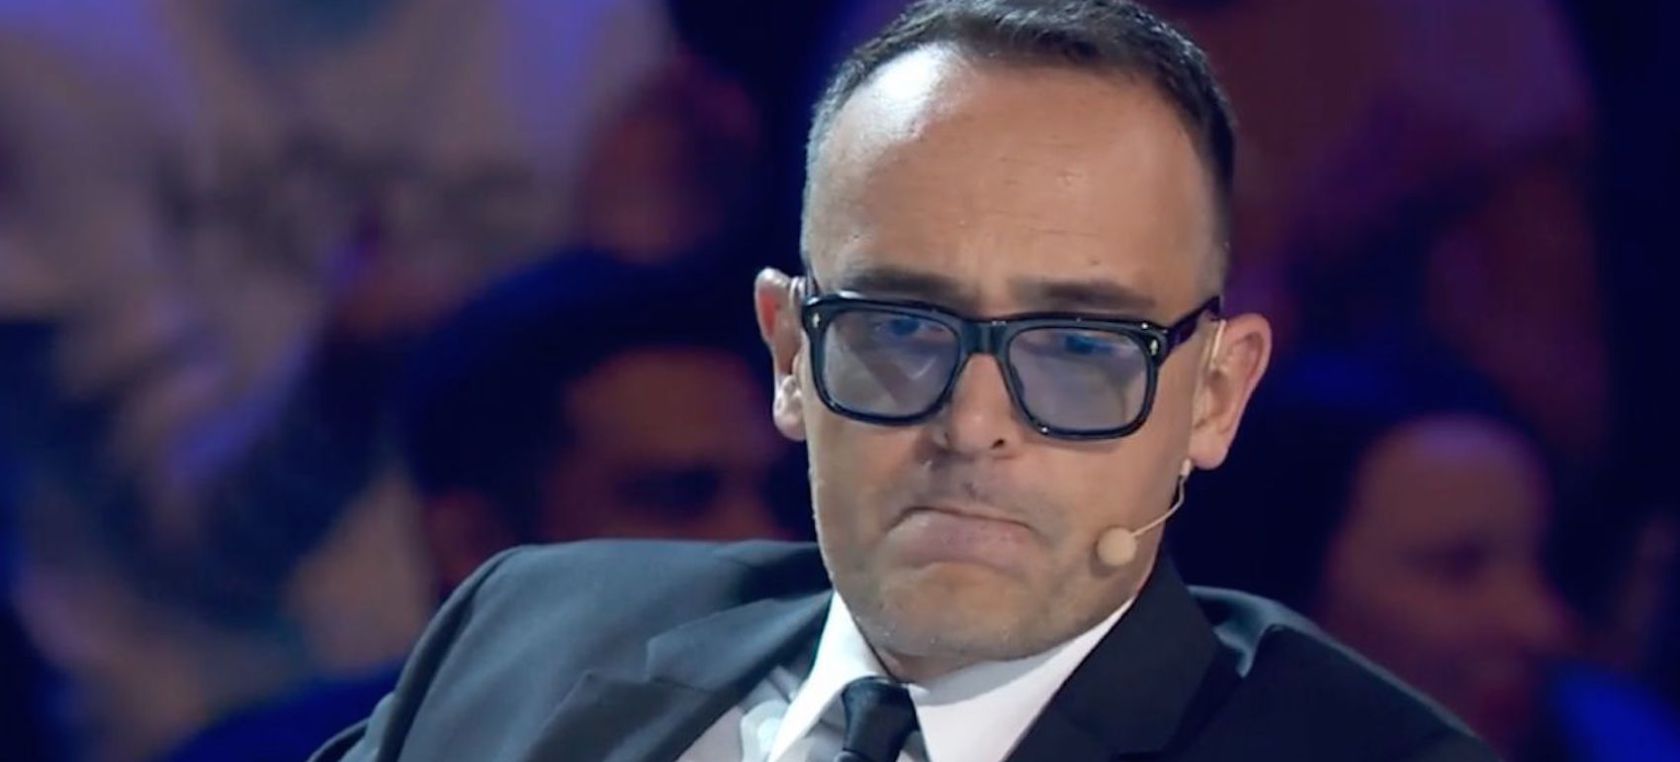 El enfado de Risto Mejide ante uno de sus favoritos de 'Got Talent': “Esto  es muy desagradable” | Cine y Televisión | LOS40